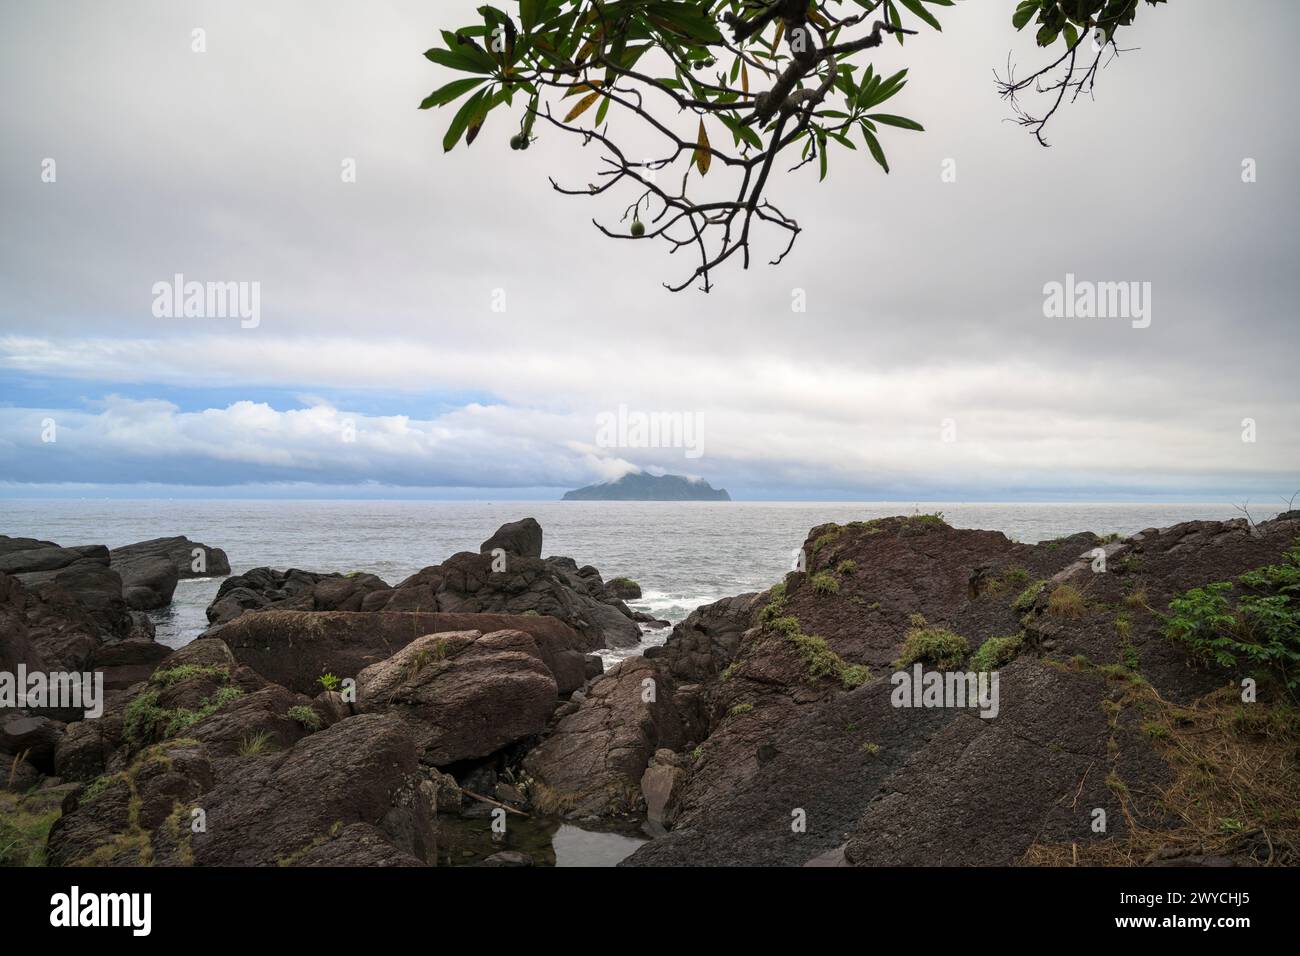 La vegetazione in primo piano incornicia la tranquilla vista di un'isola lontana tra acque marine calme e un cielo nuvoloso Foto Stock